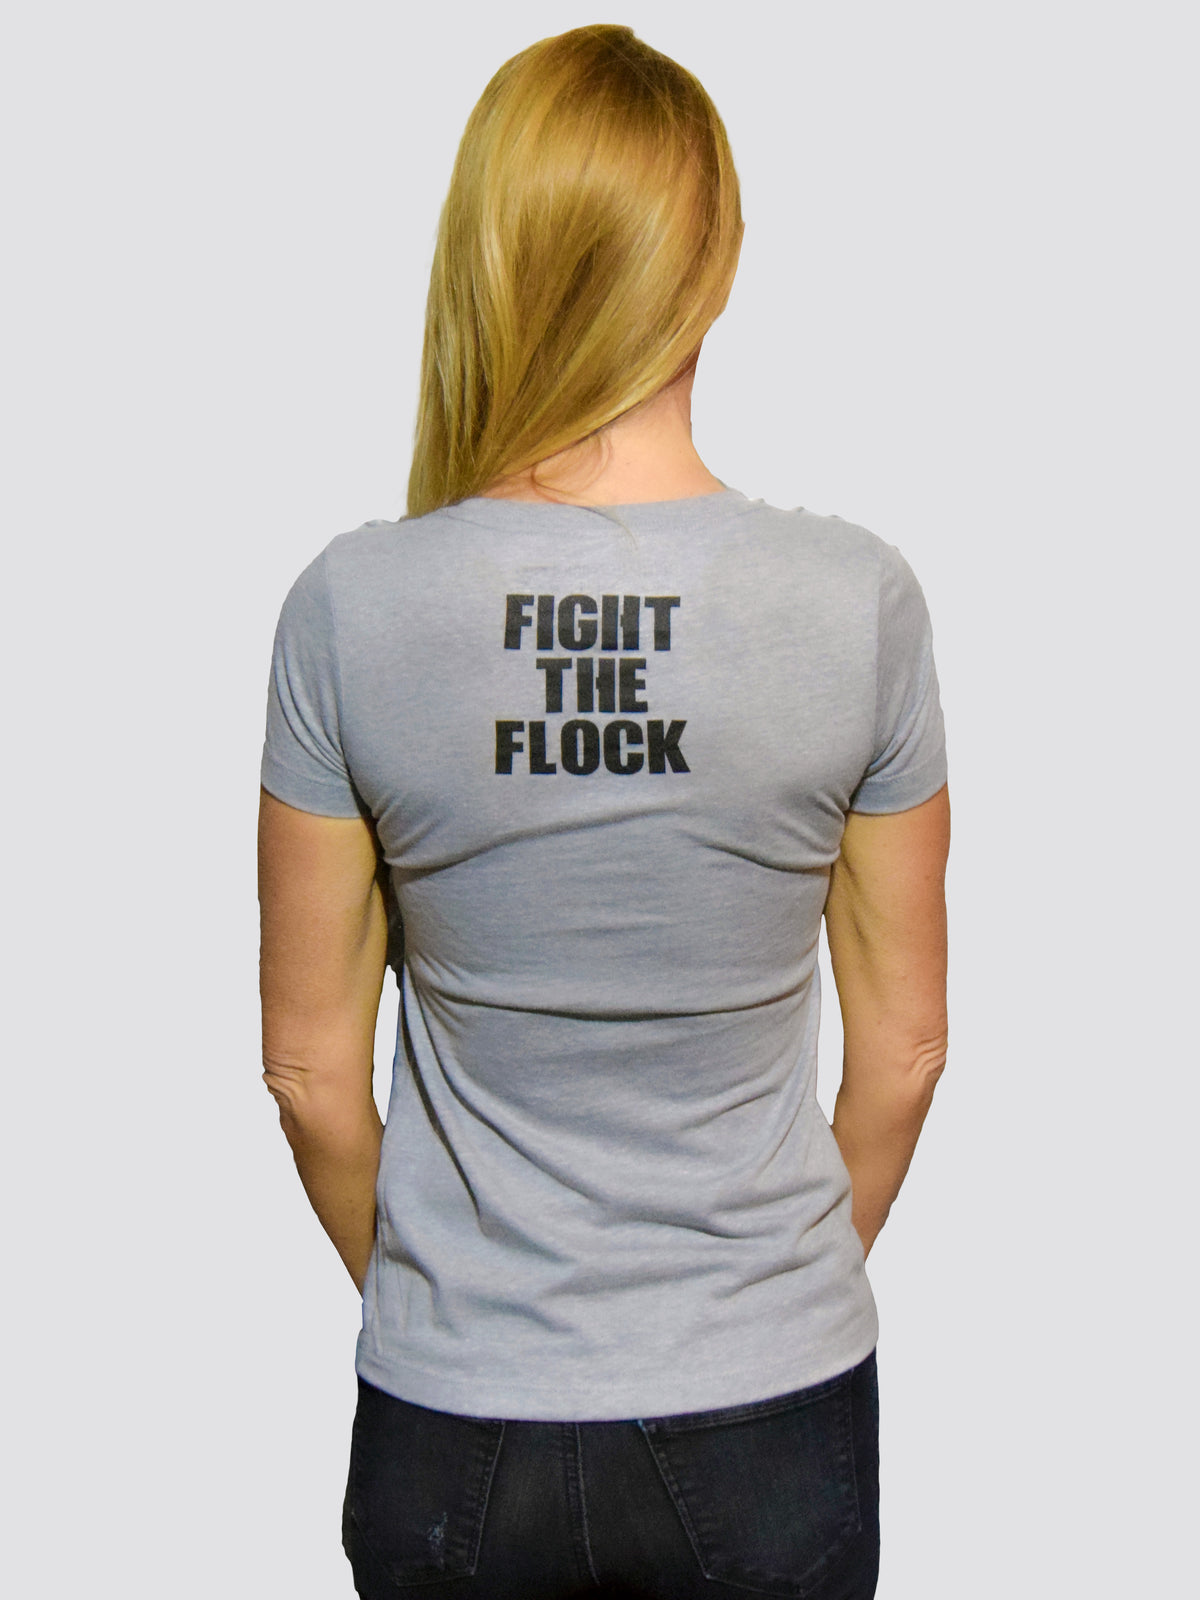 FAITH OVER FEAR Womens V-Neck T-Shirt